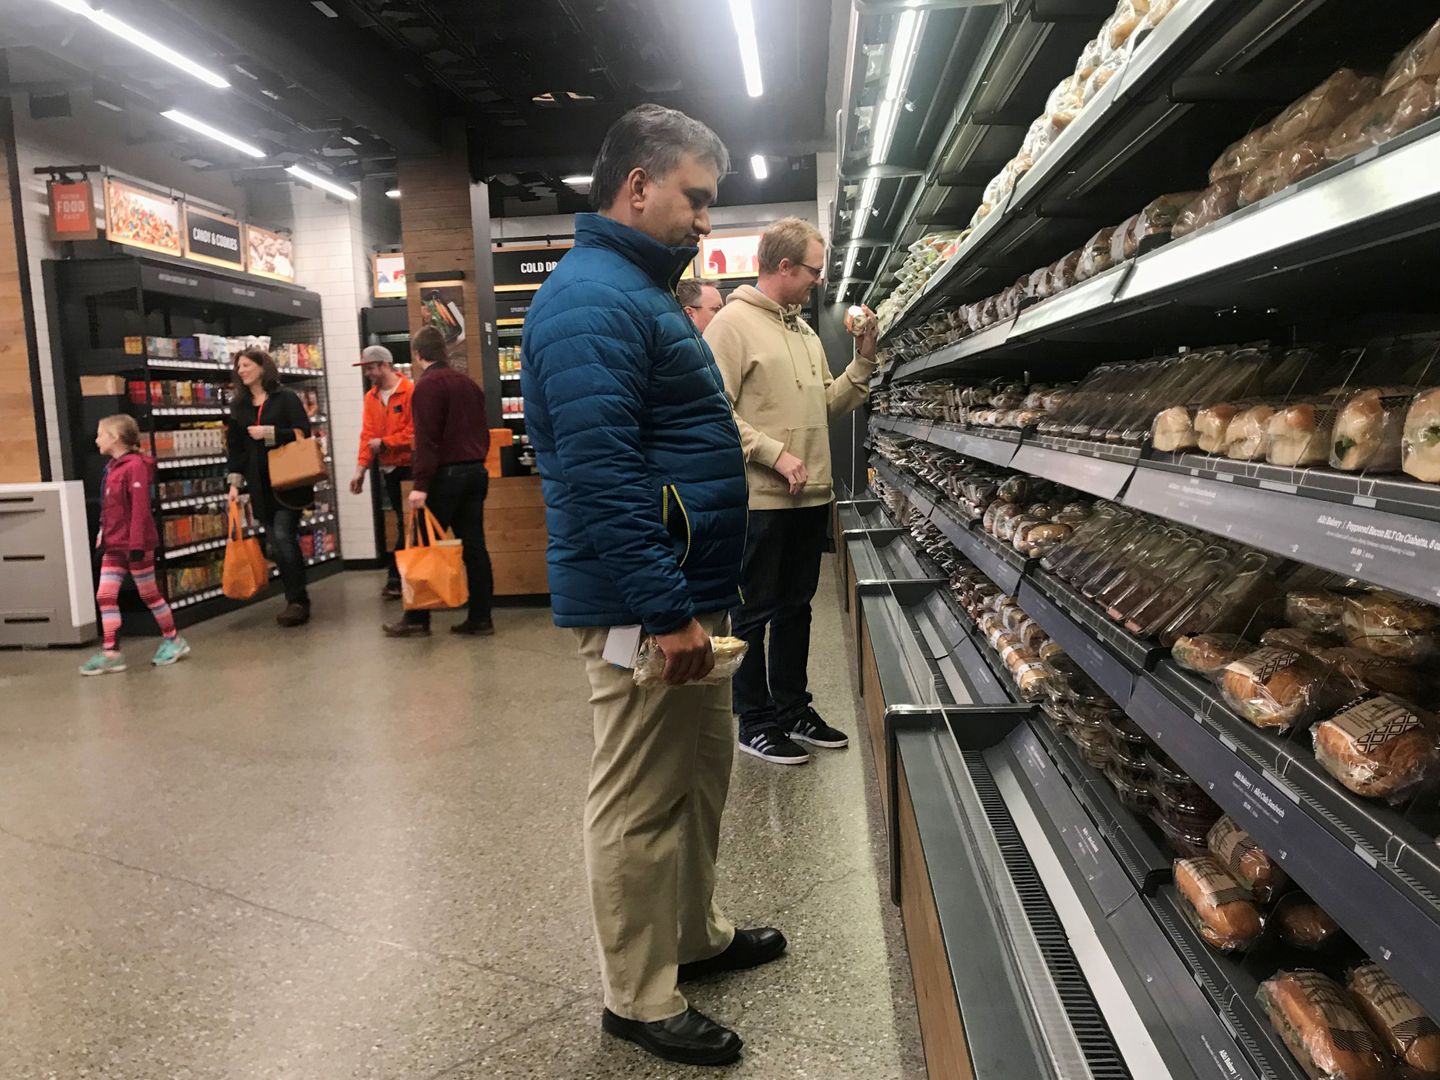 Clientes indecisos entre los wraps, sándwiches y ensaladas preparadas en un supermercado. (Reuters)